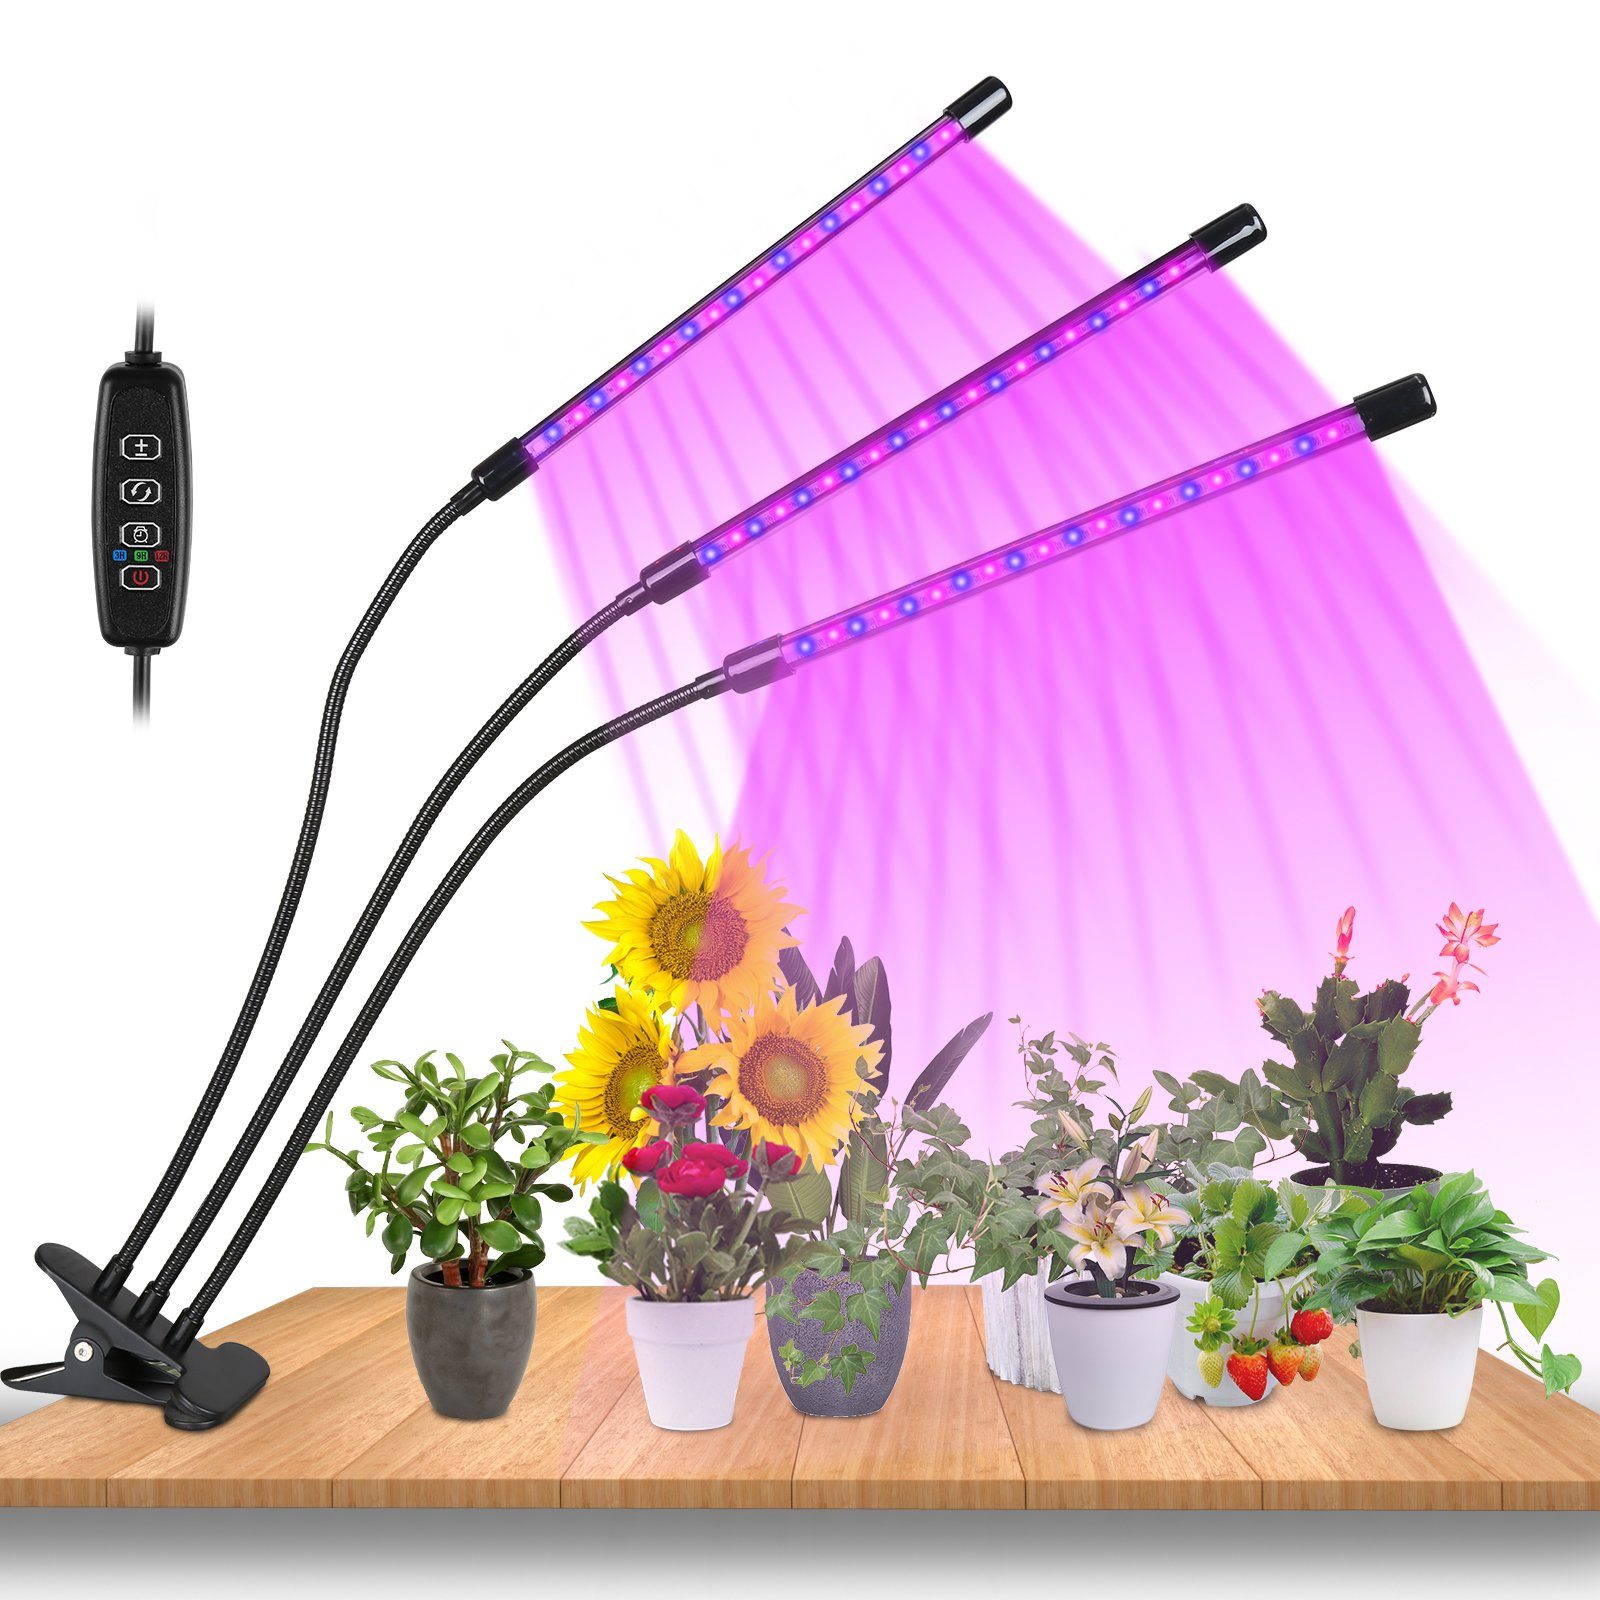 Lospitch Pflanzenlampe LED Pflanzenlicht 30W Dimmbar Vollspektrum 3 Kopf Wachstumslampe, Grow Light mit 3 Licht Modus, 10 Helligkeitsstufen